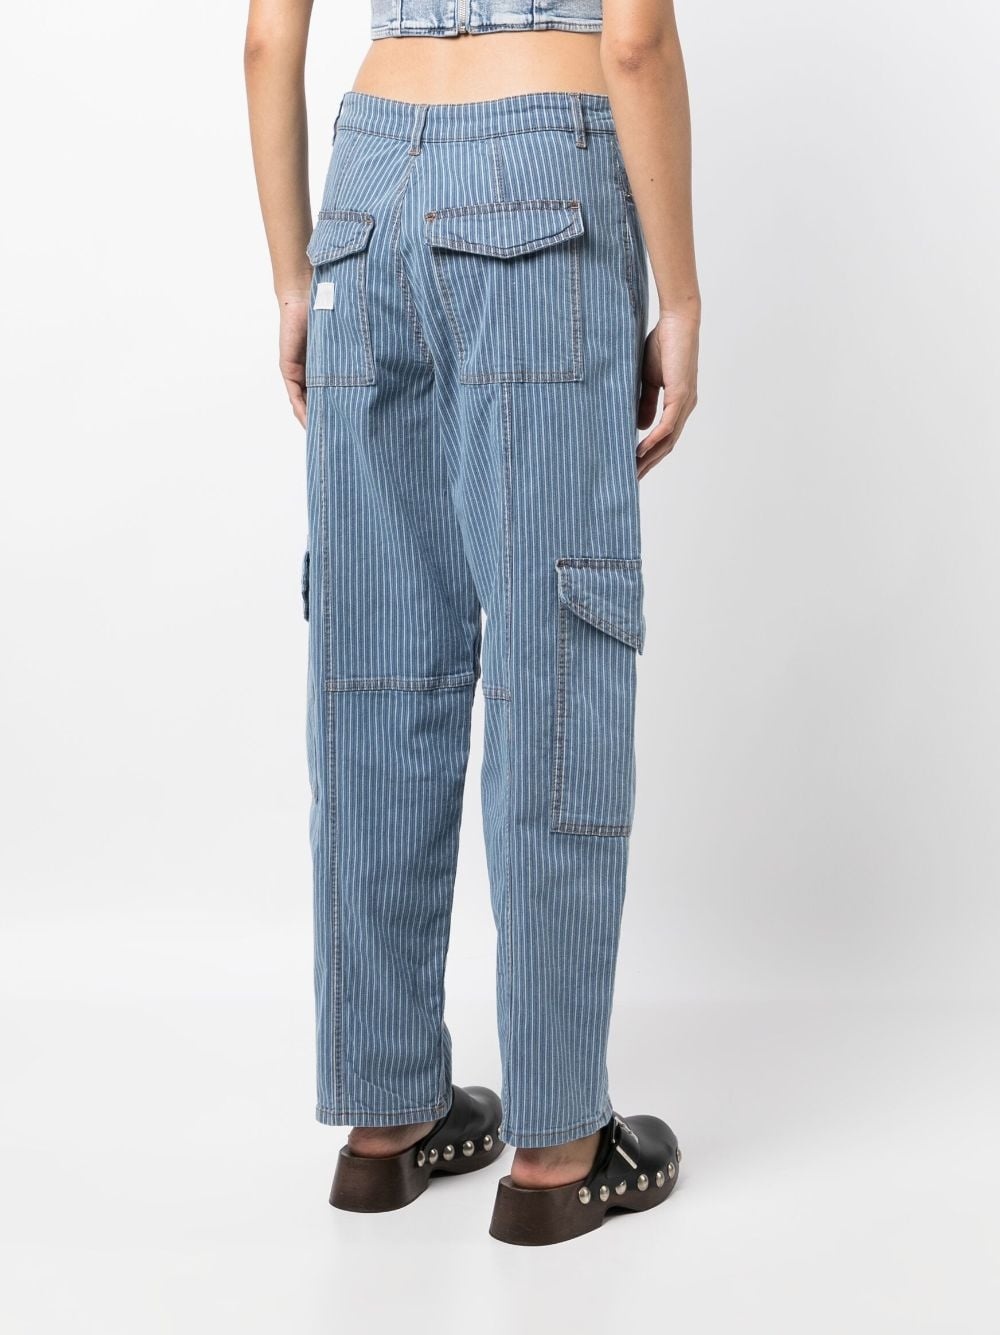 stripe-pattern cargo jeans - 4